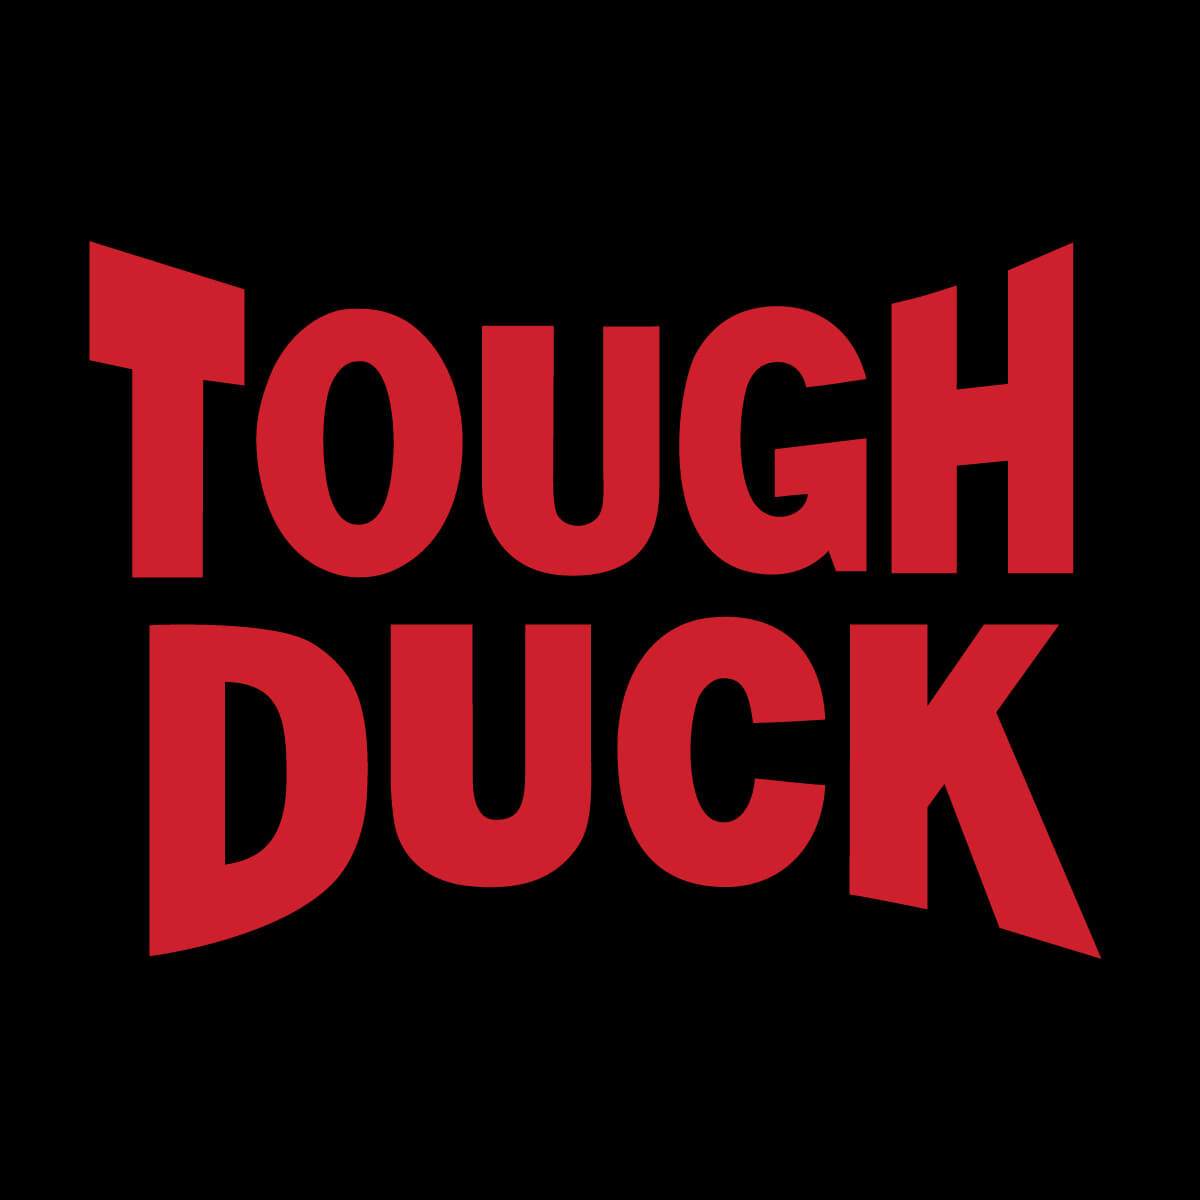 Tough Duck  Apparel - Tough Duck